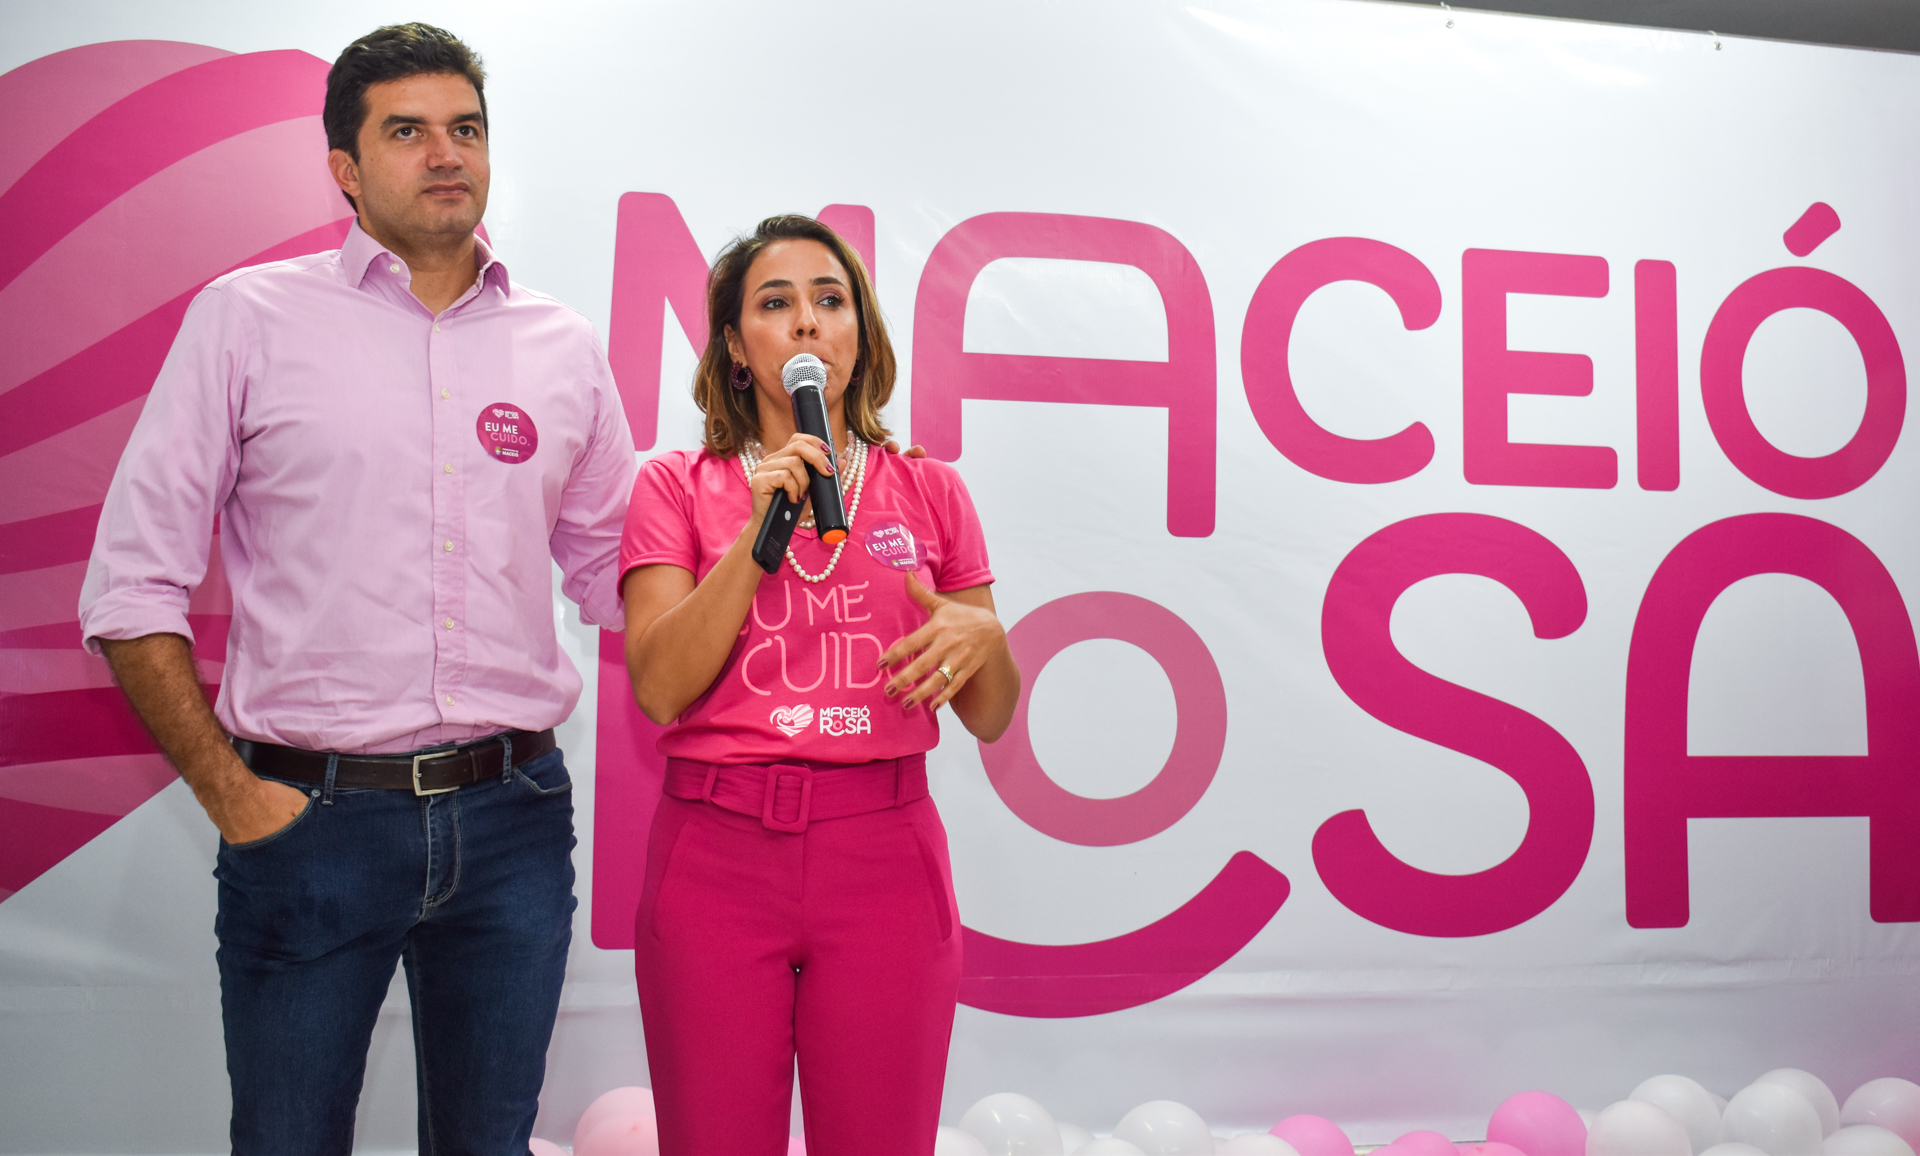 Prefeito Rui Palmeira lança campanha Maceió Rosa 2019